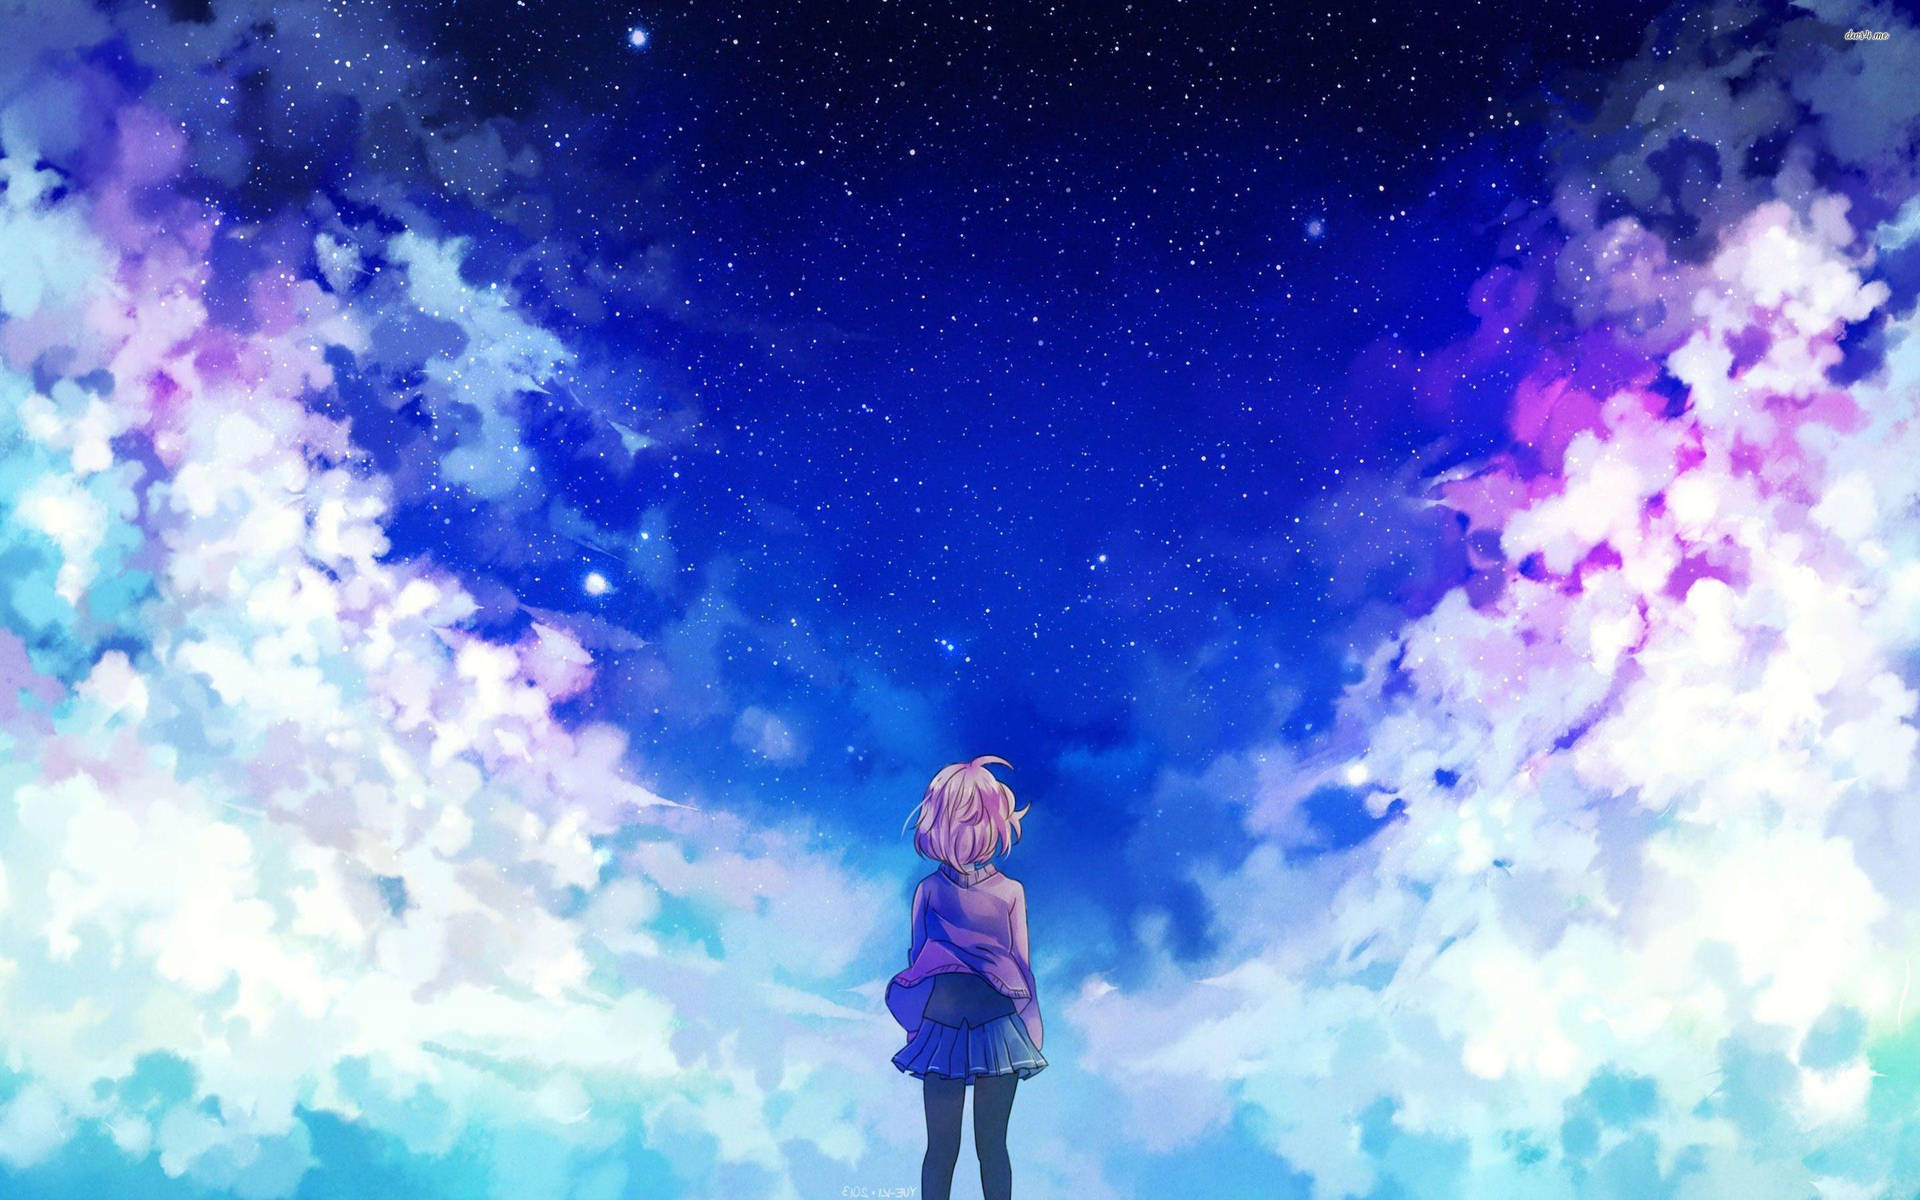 Aesthetic Anime Girl On Starry Cloud Wallpaper